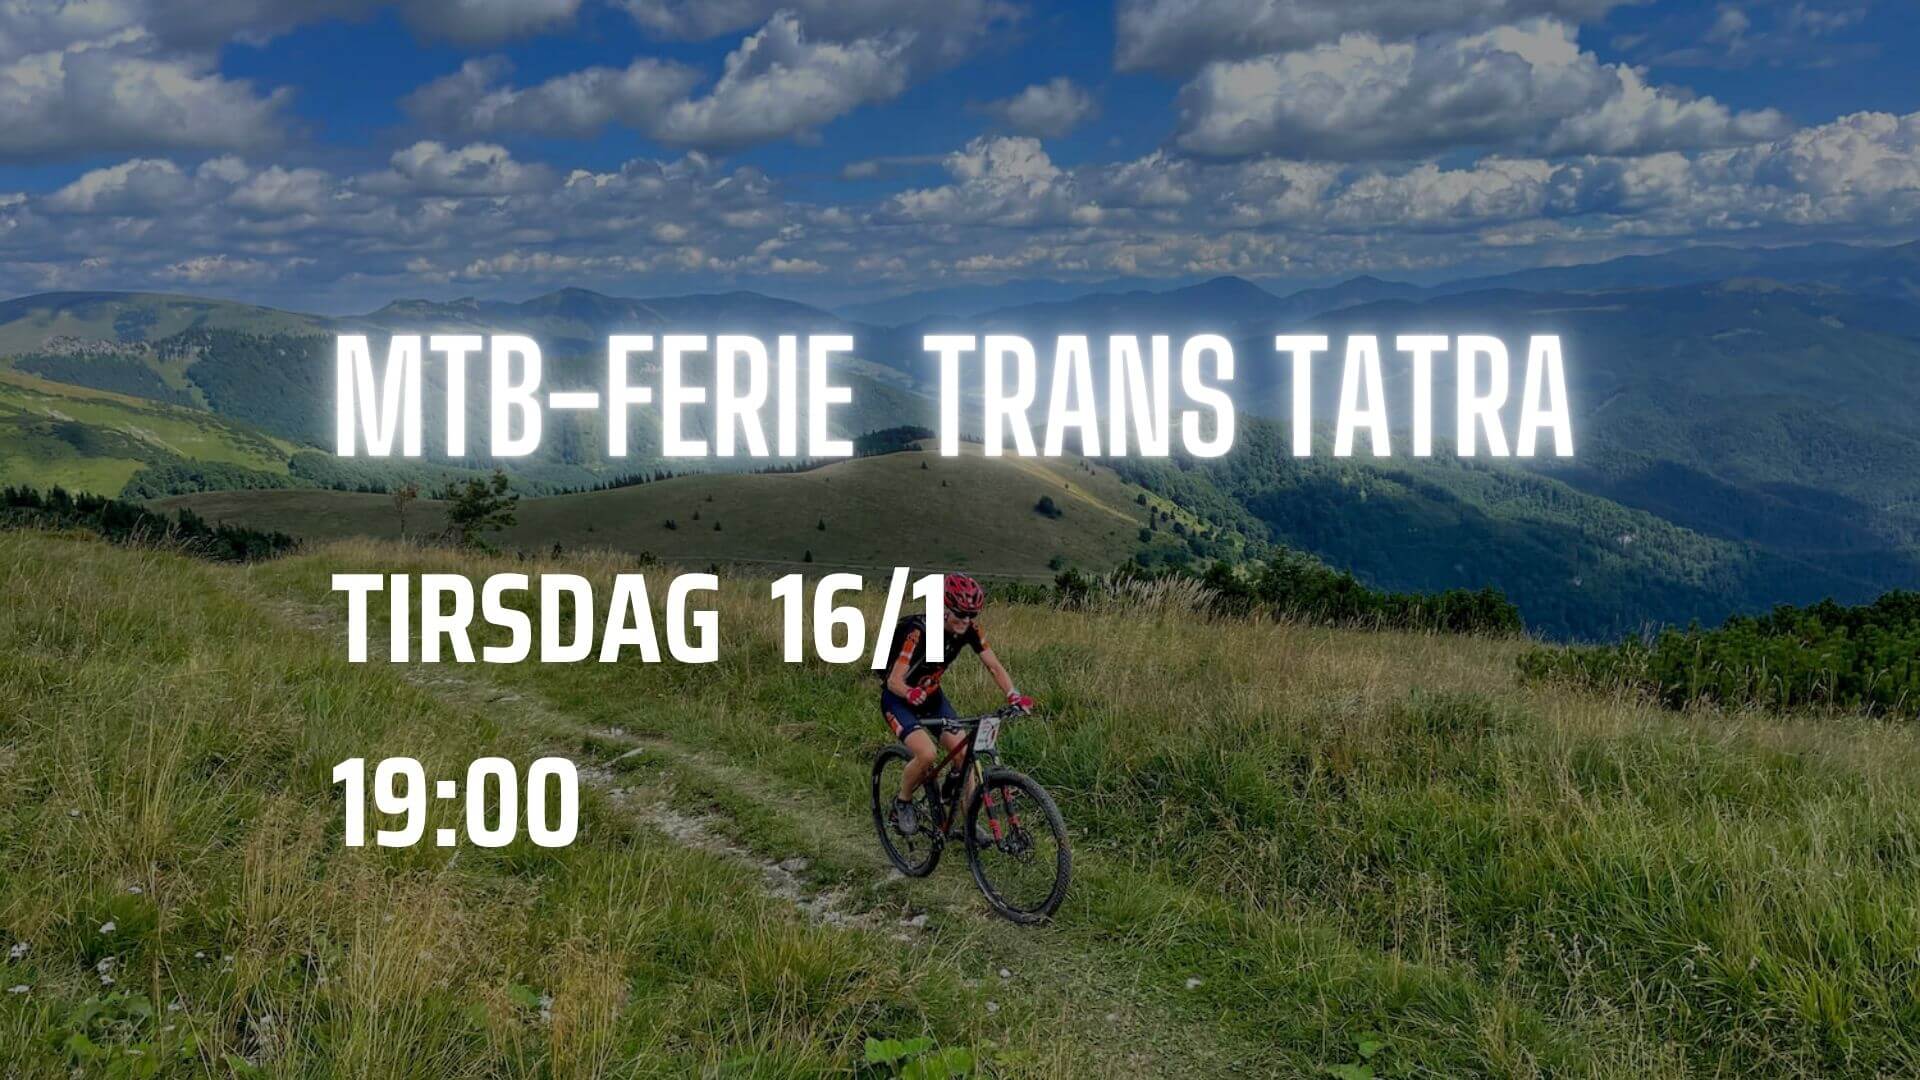 MTB-ferie trans Tarta. Tirsdag 16/1 19:00